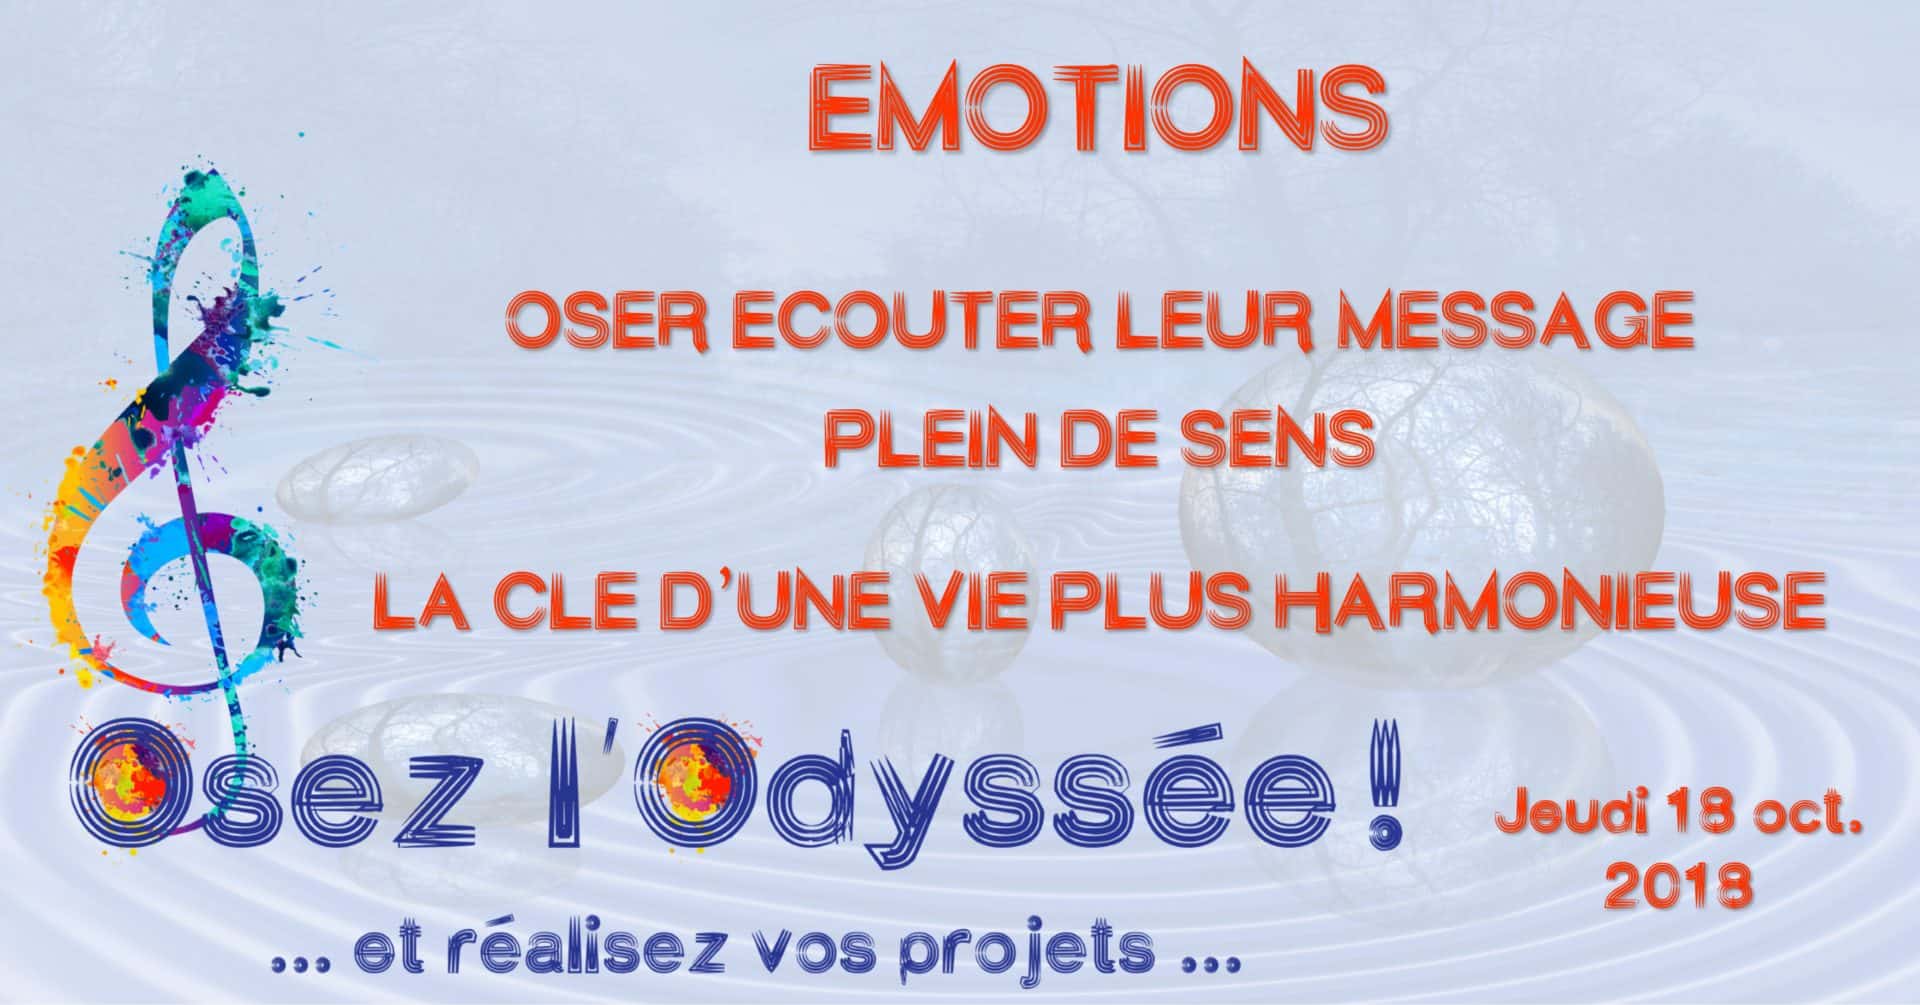 Émotions - Soirée coaching de vie à Bordeaux Osez l'Odyssée 2018